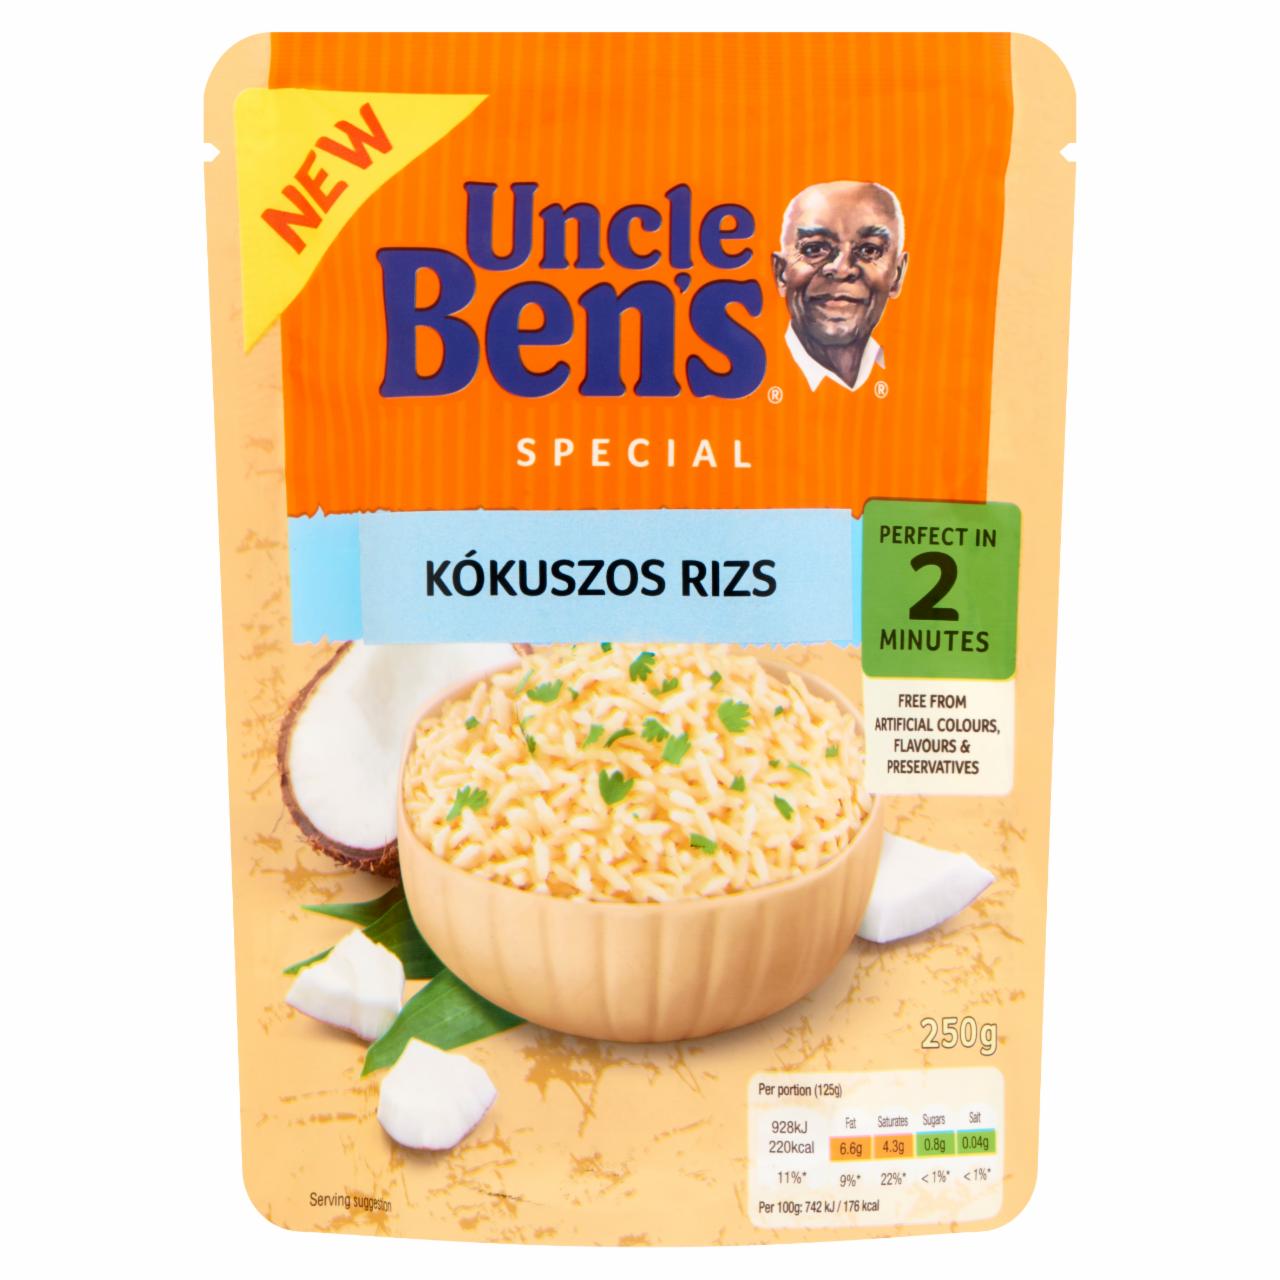 Képek - Uncle Ben's kókuszos rizs 250 g